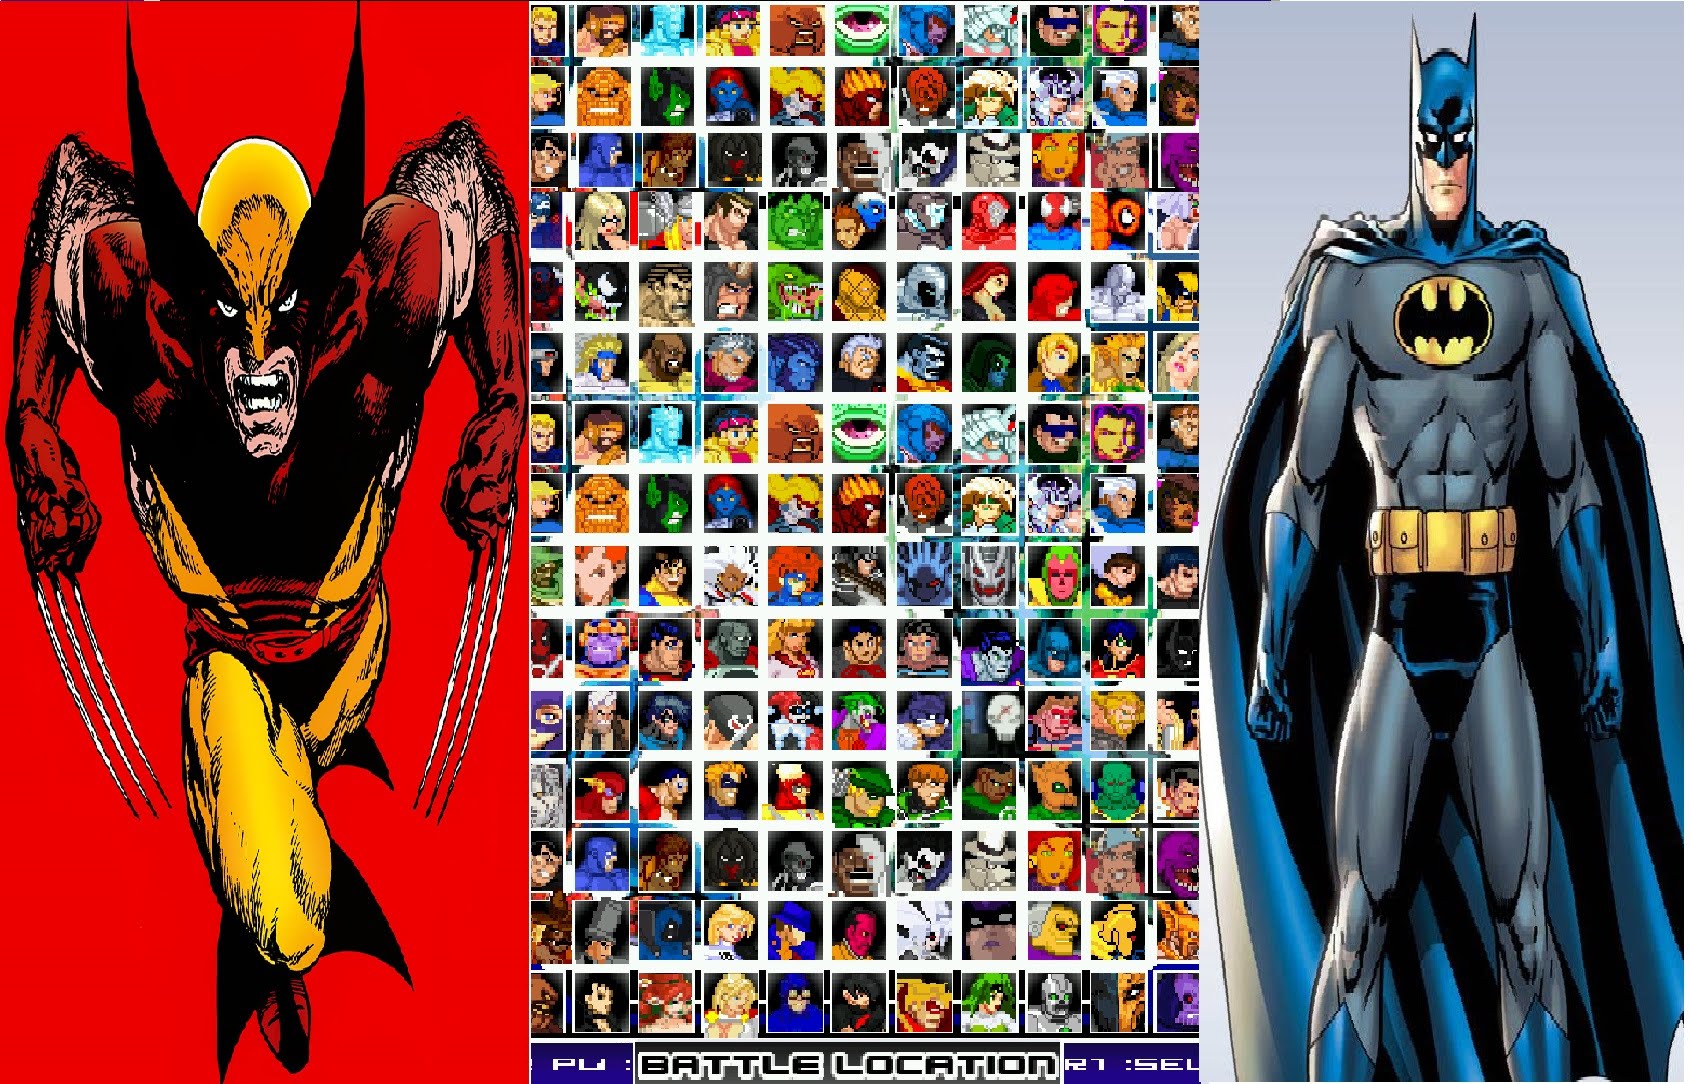 DC Vs. Marvel Backgrounds, Compatible - PC, Mobile, Gadgets 1690x1084 px. 